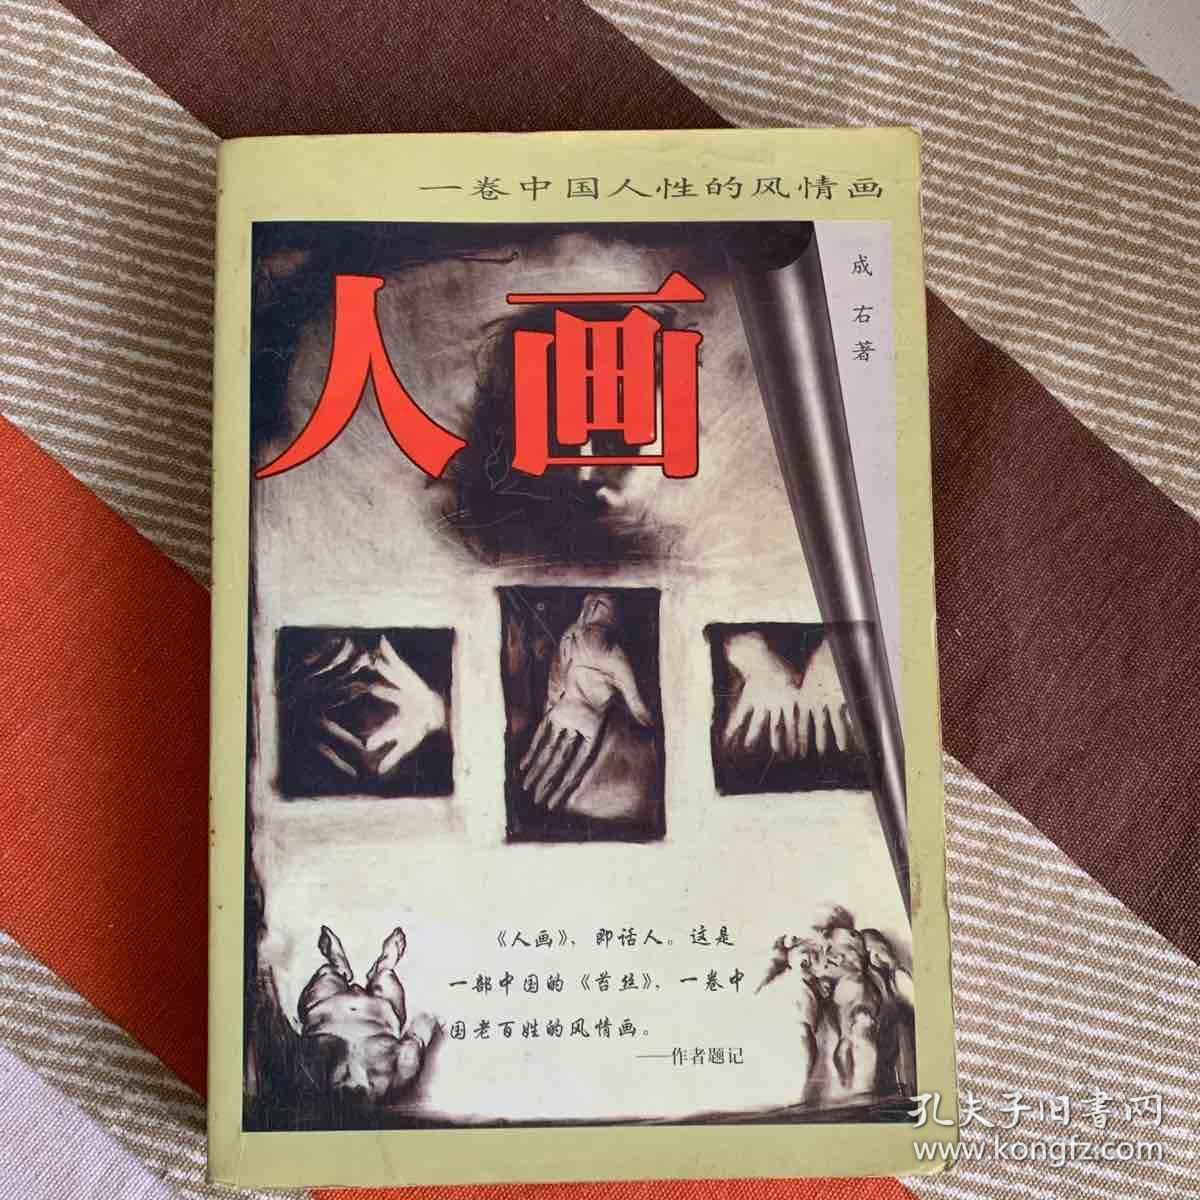 人画(又名:林老板家的苔丝) 一卷中国人性的风情画.人